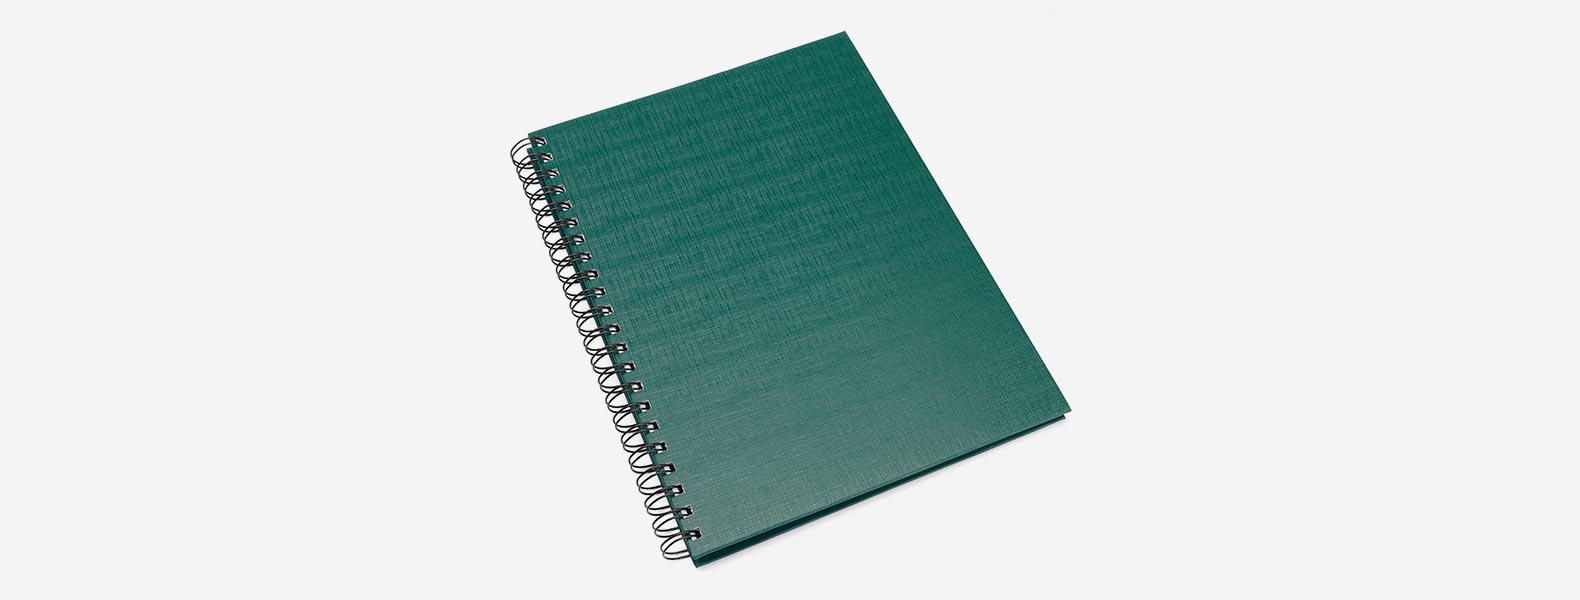 Caderno para anotações wire-o verde com capa dura revestida em percalux linho. Conta com folha para dados pessoais, calendário e 100 folhas pautadas. Gramatura da folha de 70 g/m2.